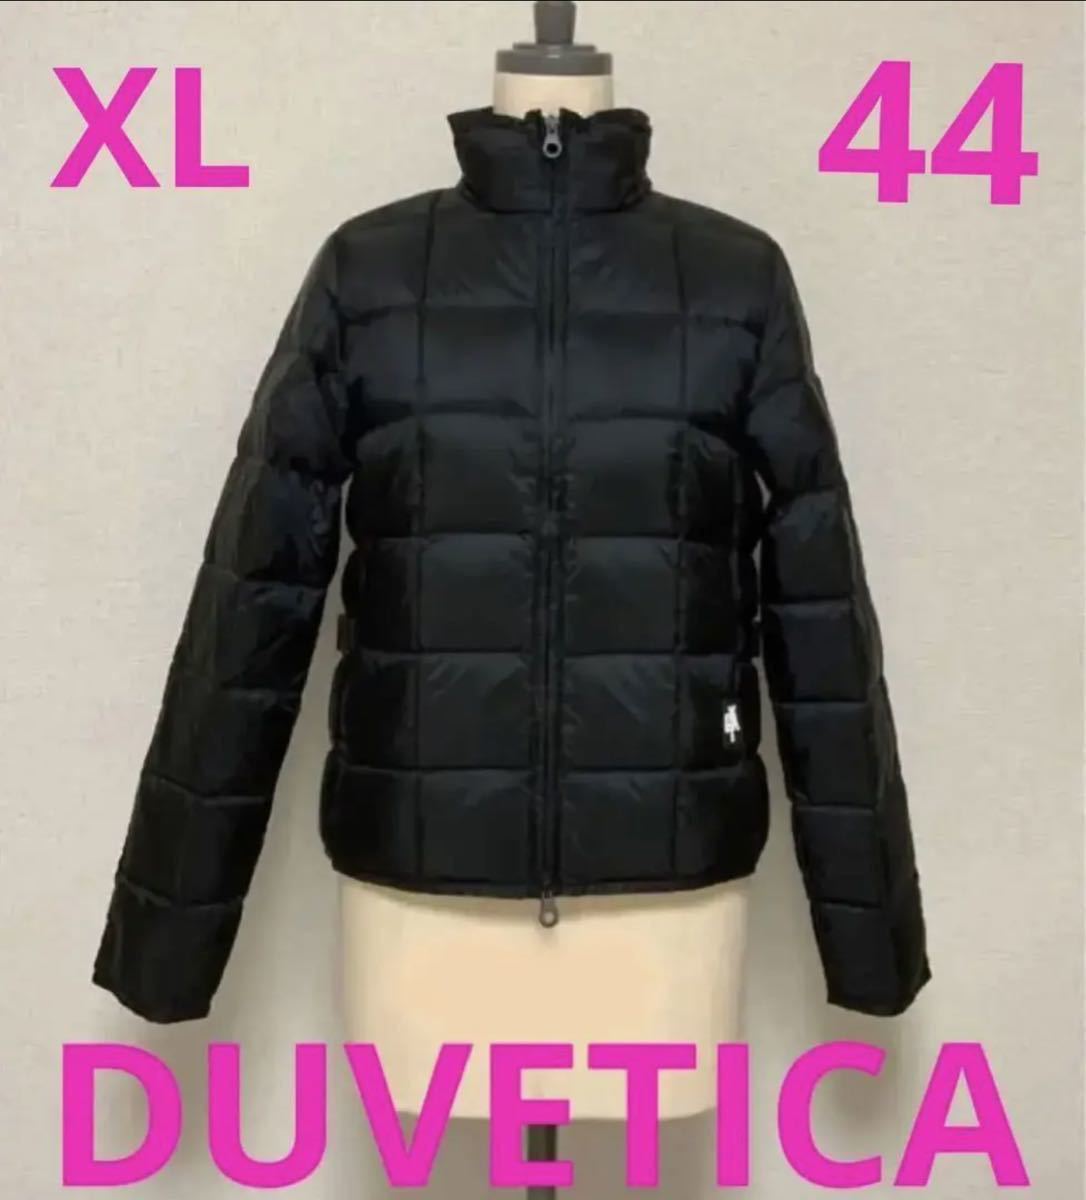 洗練された存在感を放つダウンジャケット DUVETICA デュベティカ CASERSA 新製品 ダウンジャケット44 XLサイズ